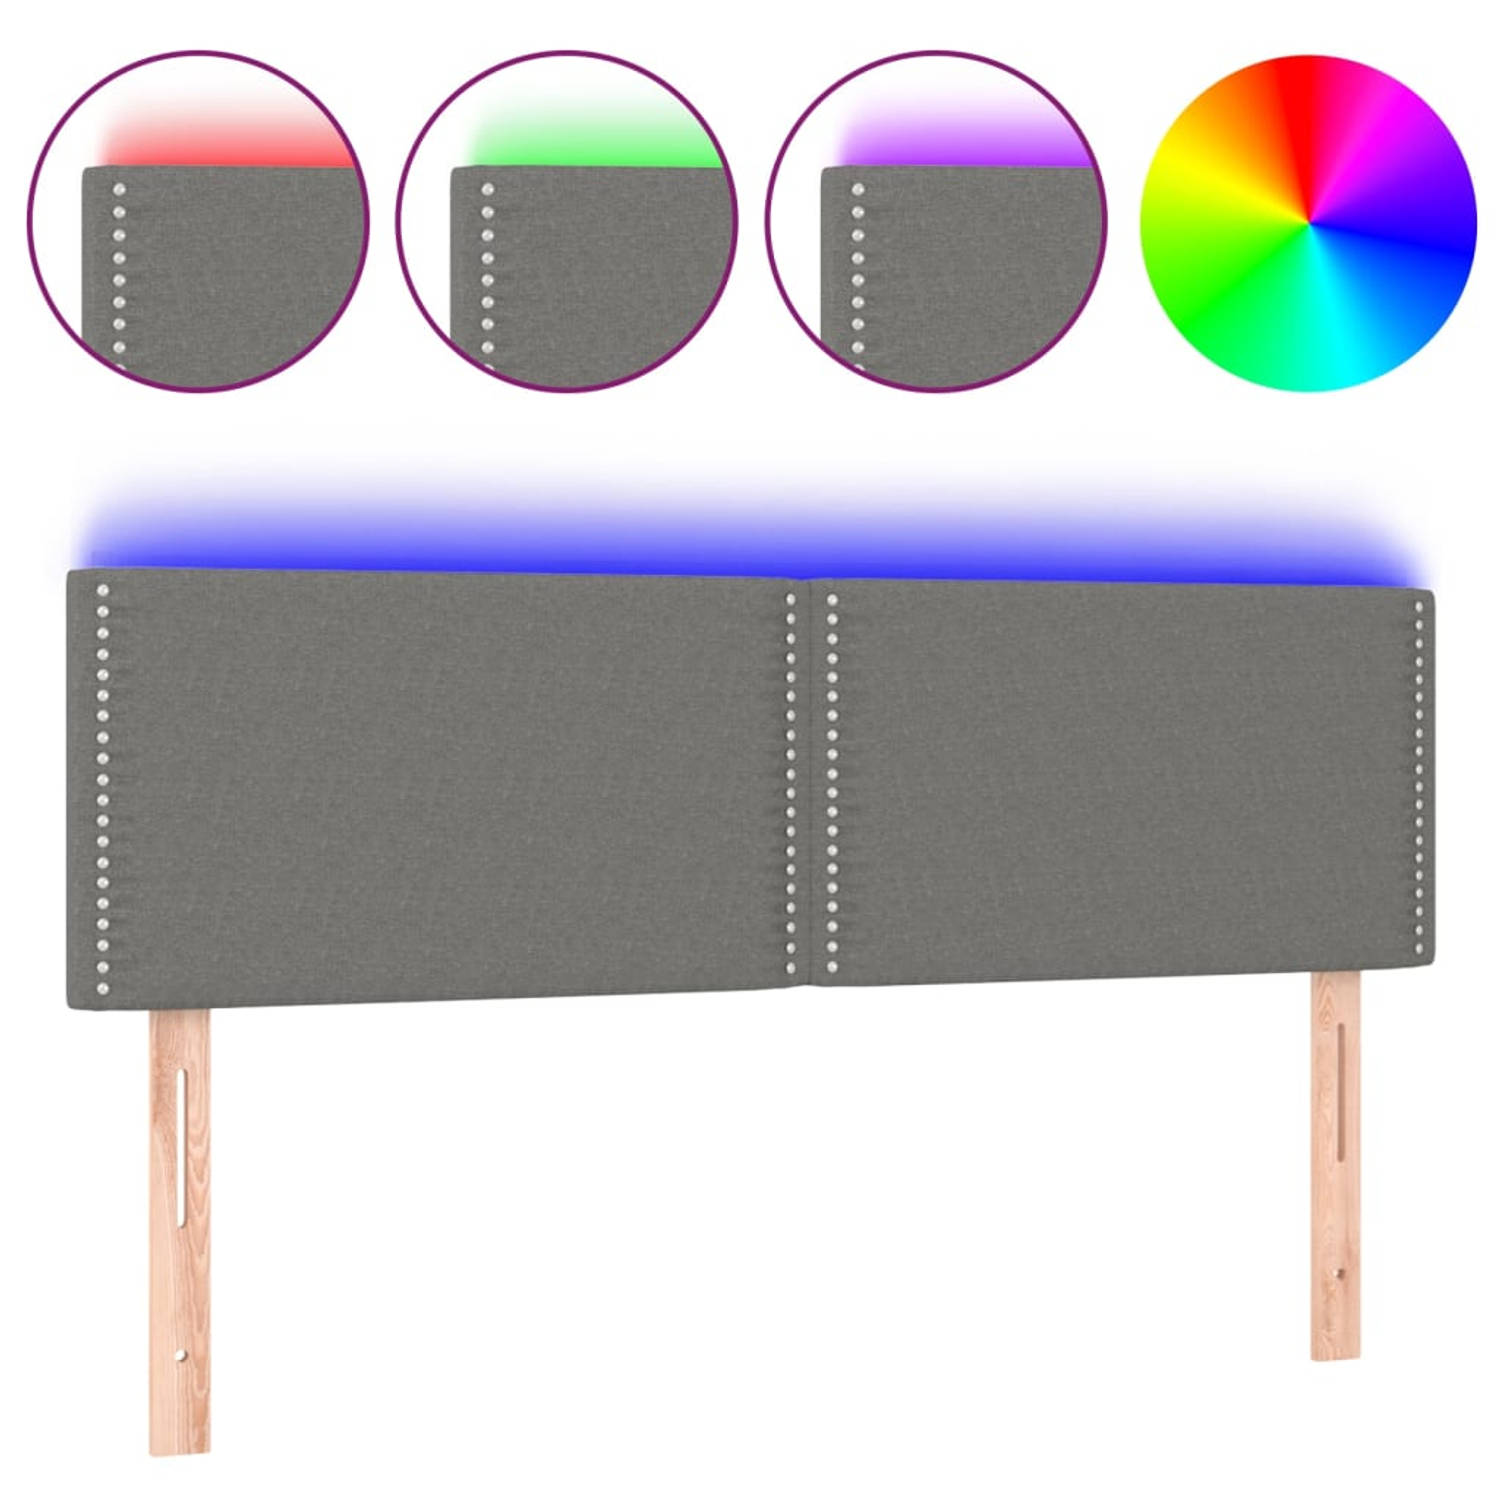 The Living Store Hoofdeind LED-strip - Donkergrijs - 144 x 5 x 78/88 cm - Verstelbare hoogte - Comfortabele ondersteuning - Duurzaam materiaal - Kleurrijke LED-verlichting - Snijdb